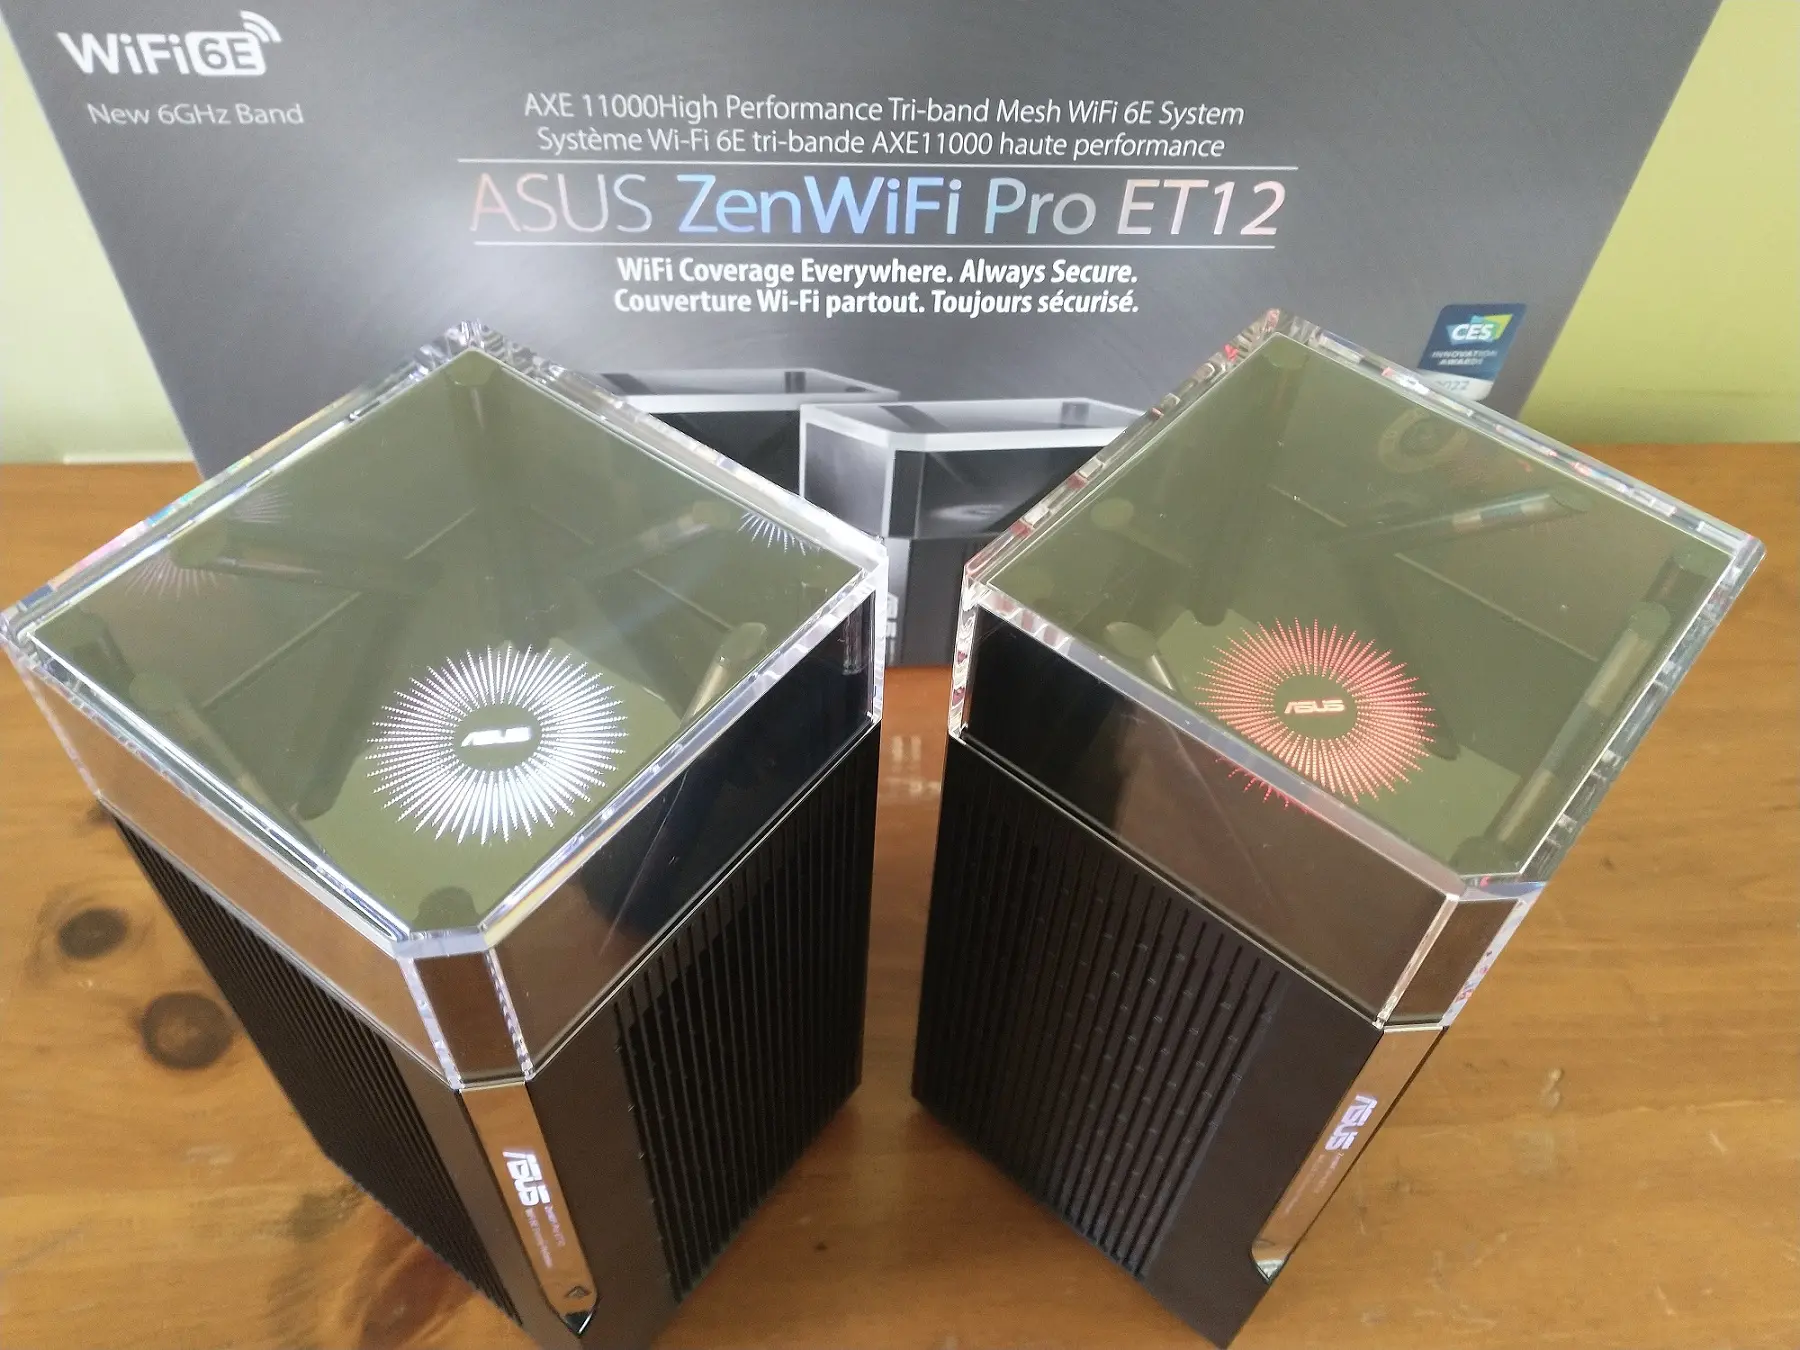 ASUS ZenWifi Pro ET12
